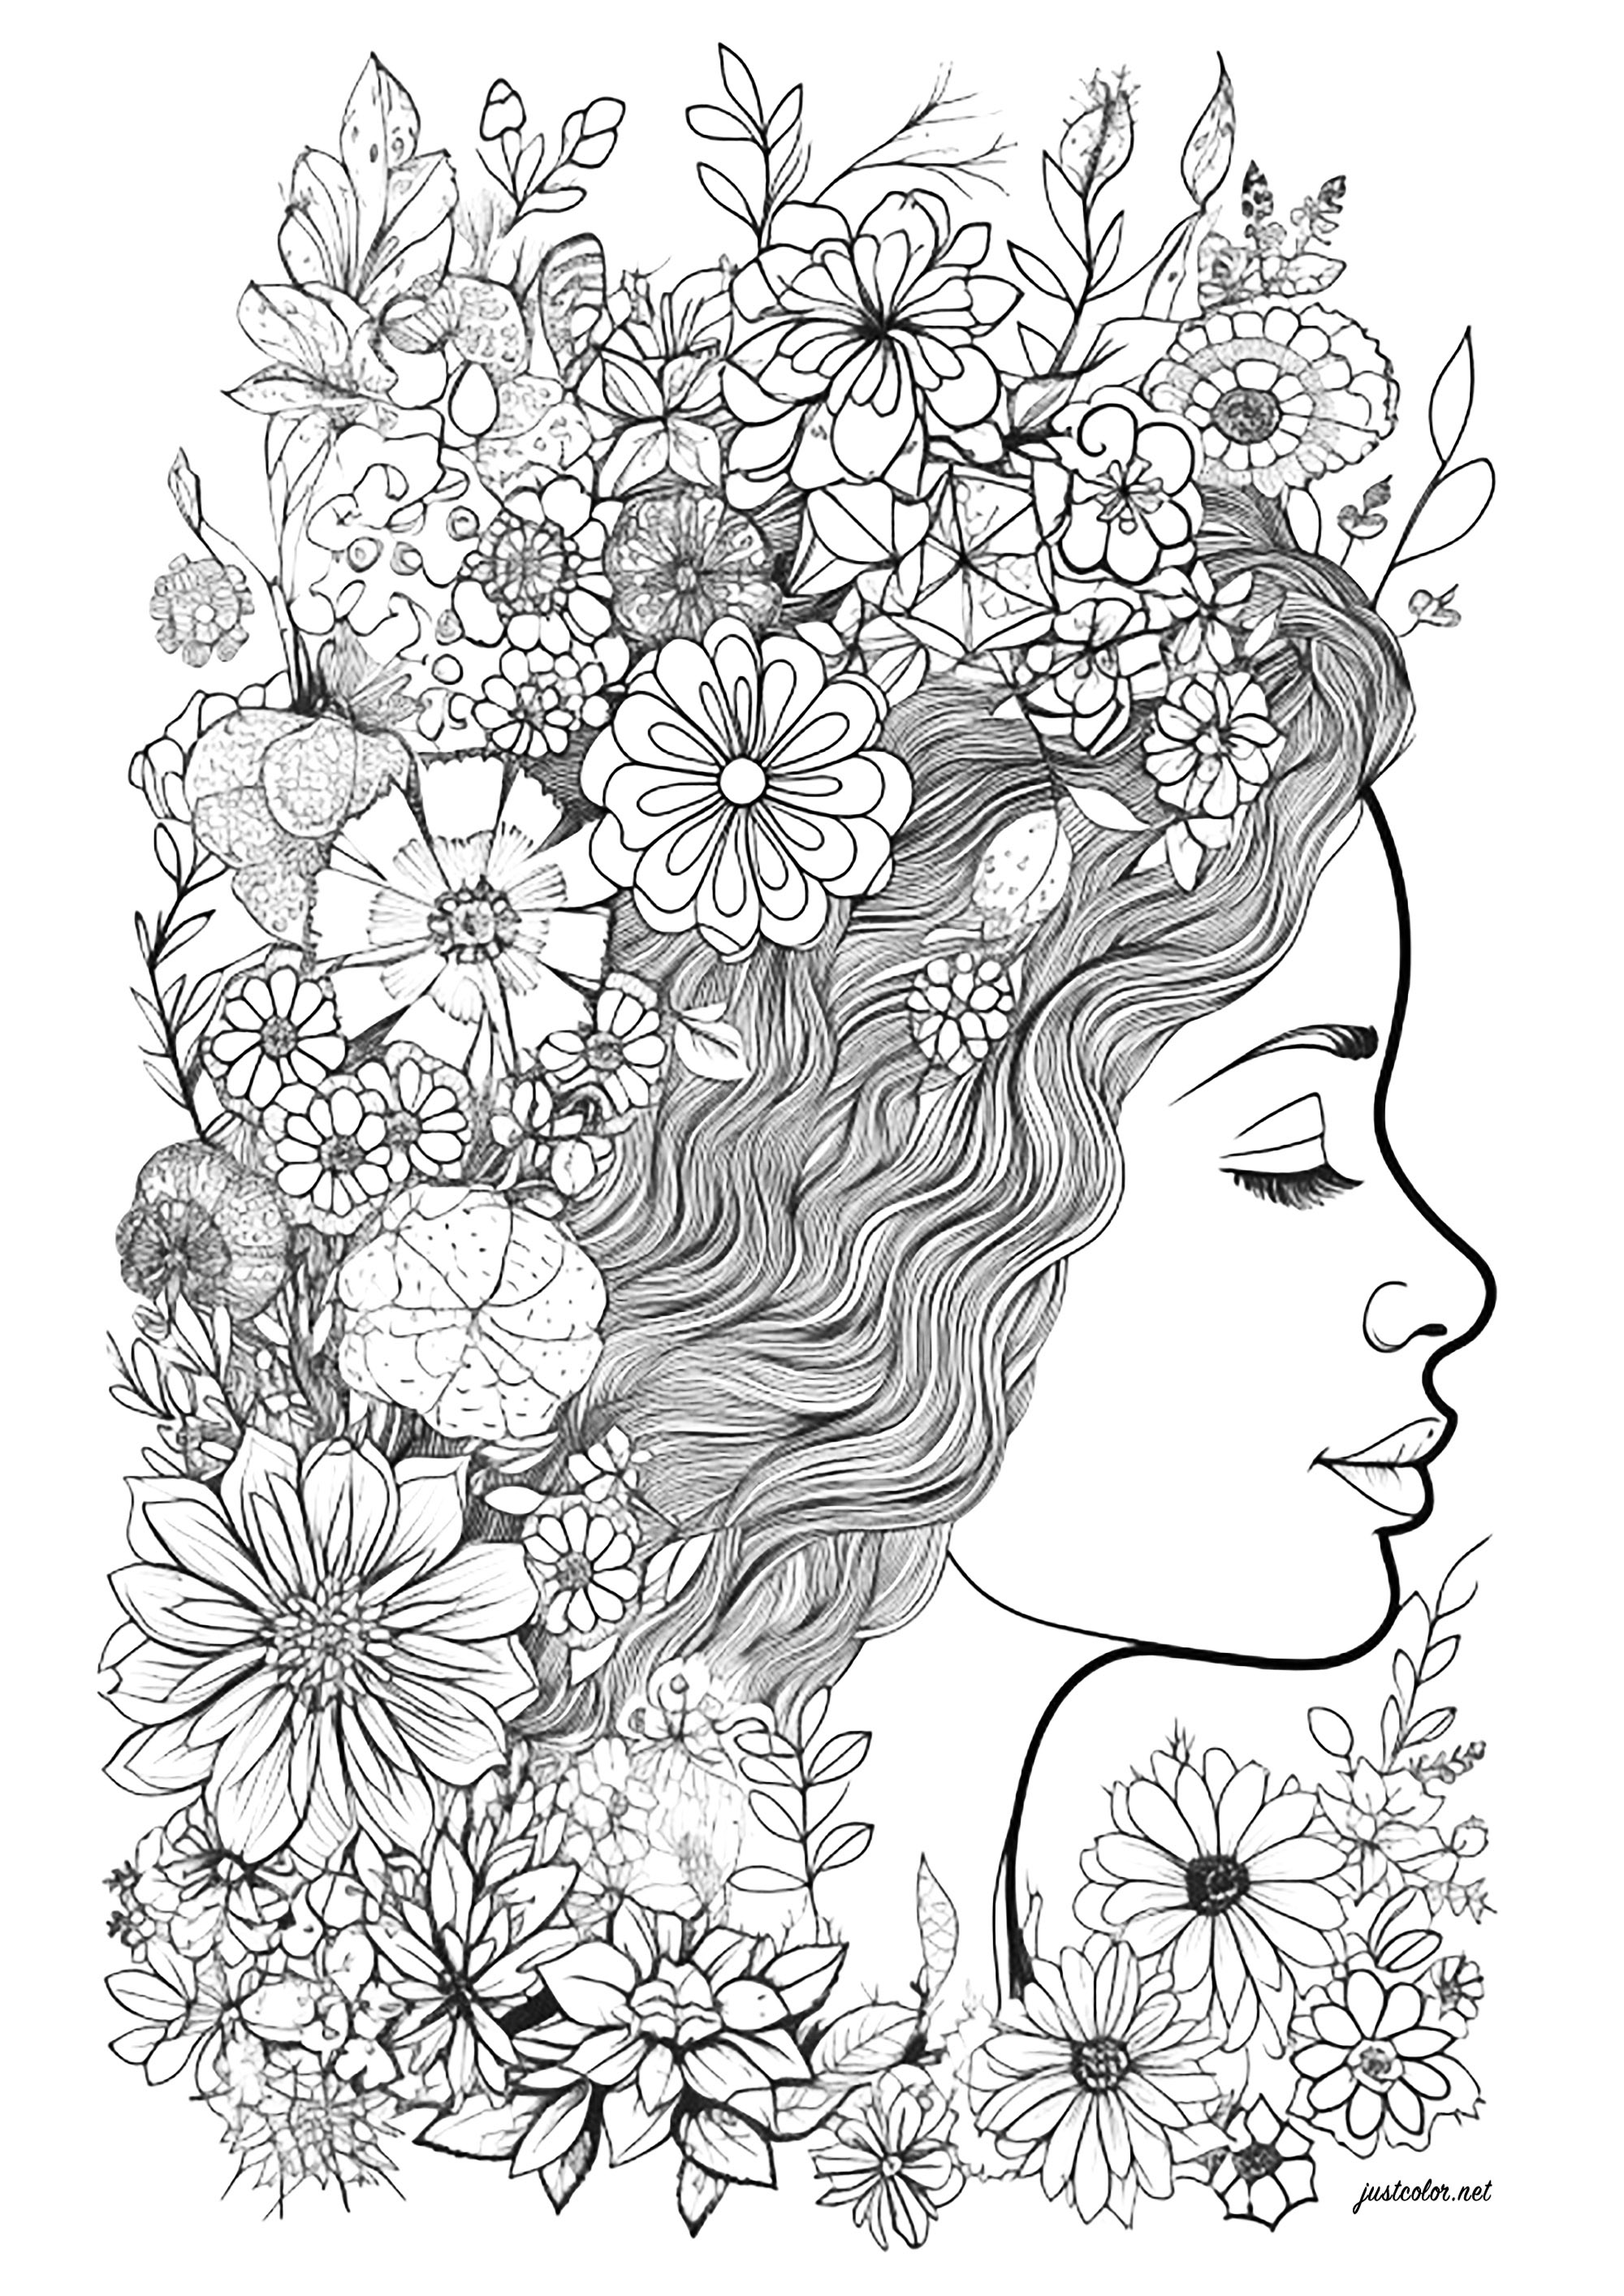 Volto di donna di profilo, circondato da fiori. Colorate tutti questi bellissimi fiori nei capelli di questa donna